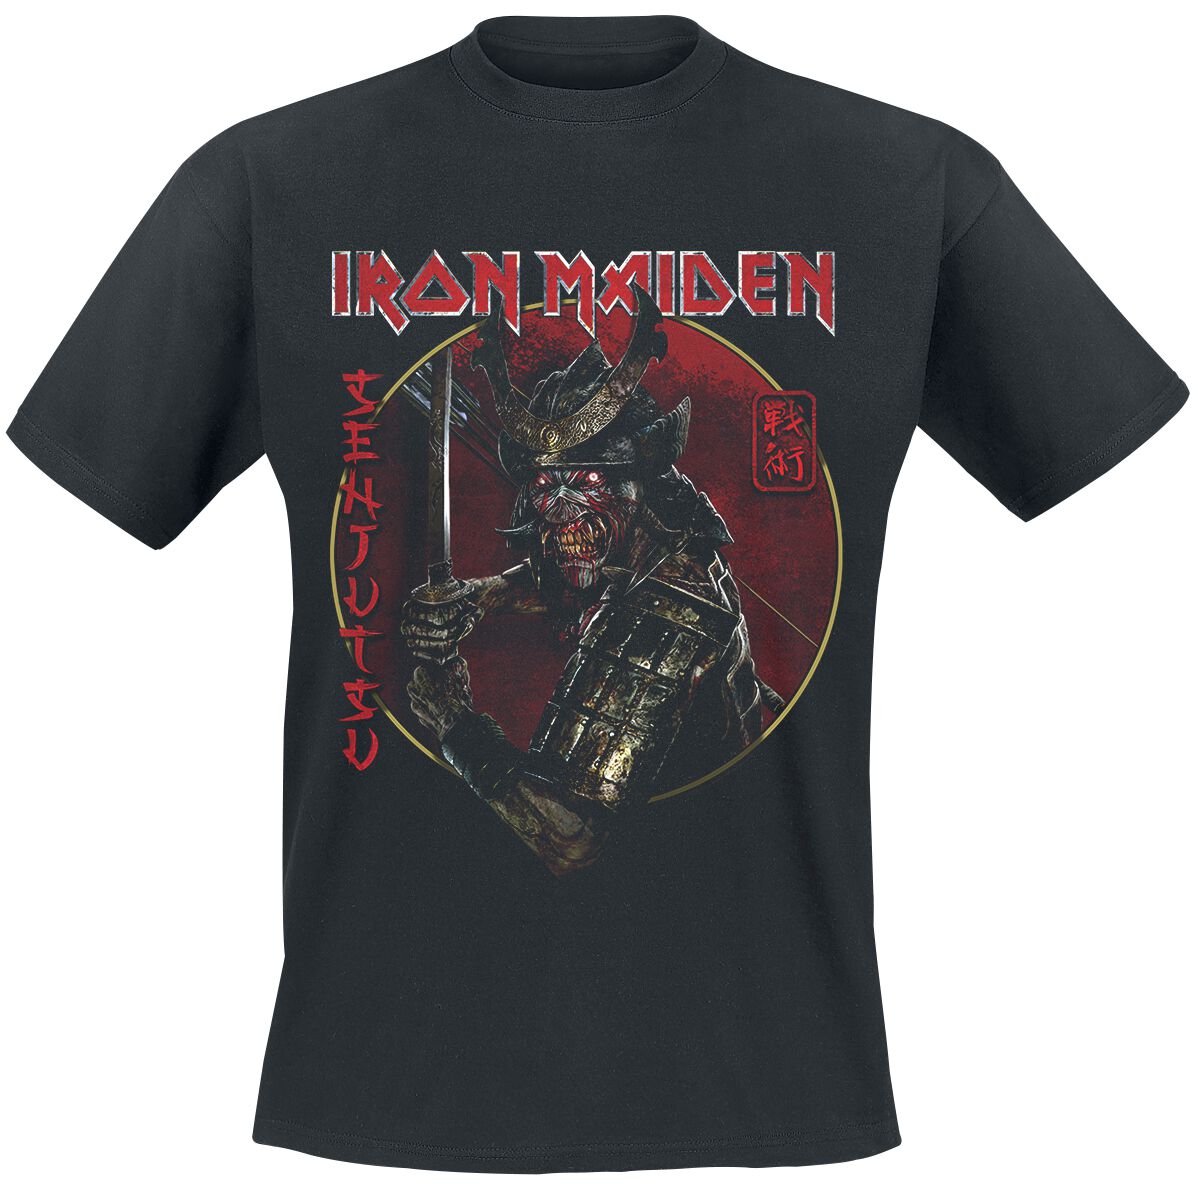 Iron Maiden T-Shirt - Senjutsu Eddie Gold Circle - S bis 4XL - für Männer - Größe 3XL - schwarz  - EMP exklusives Merchandise!